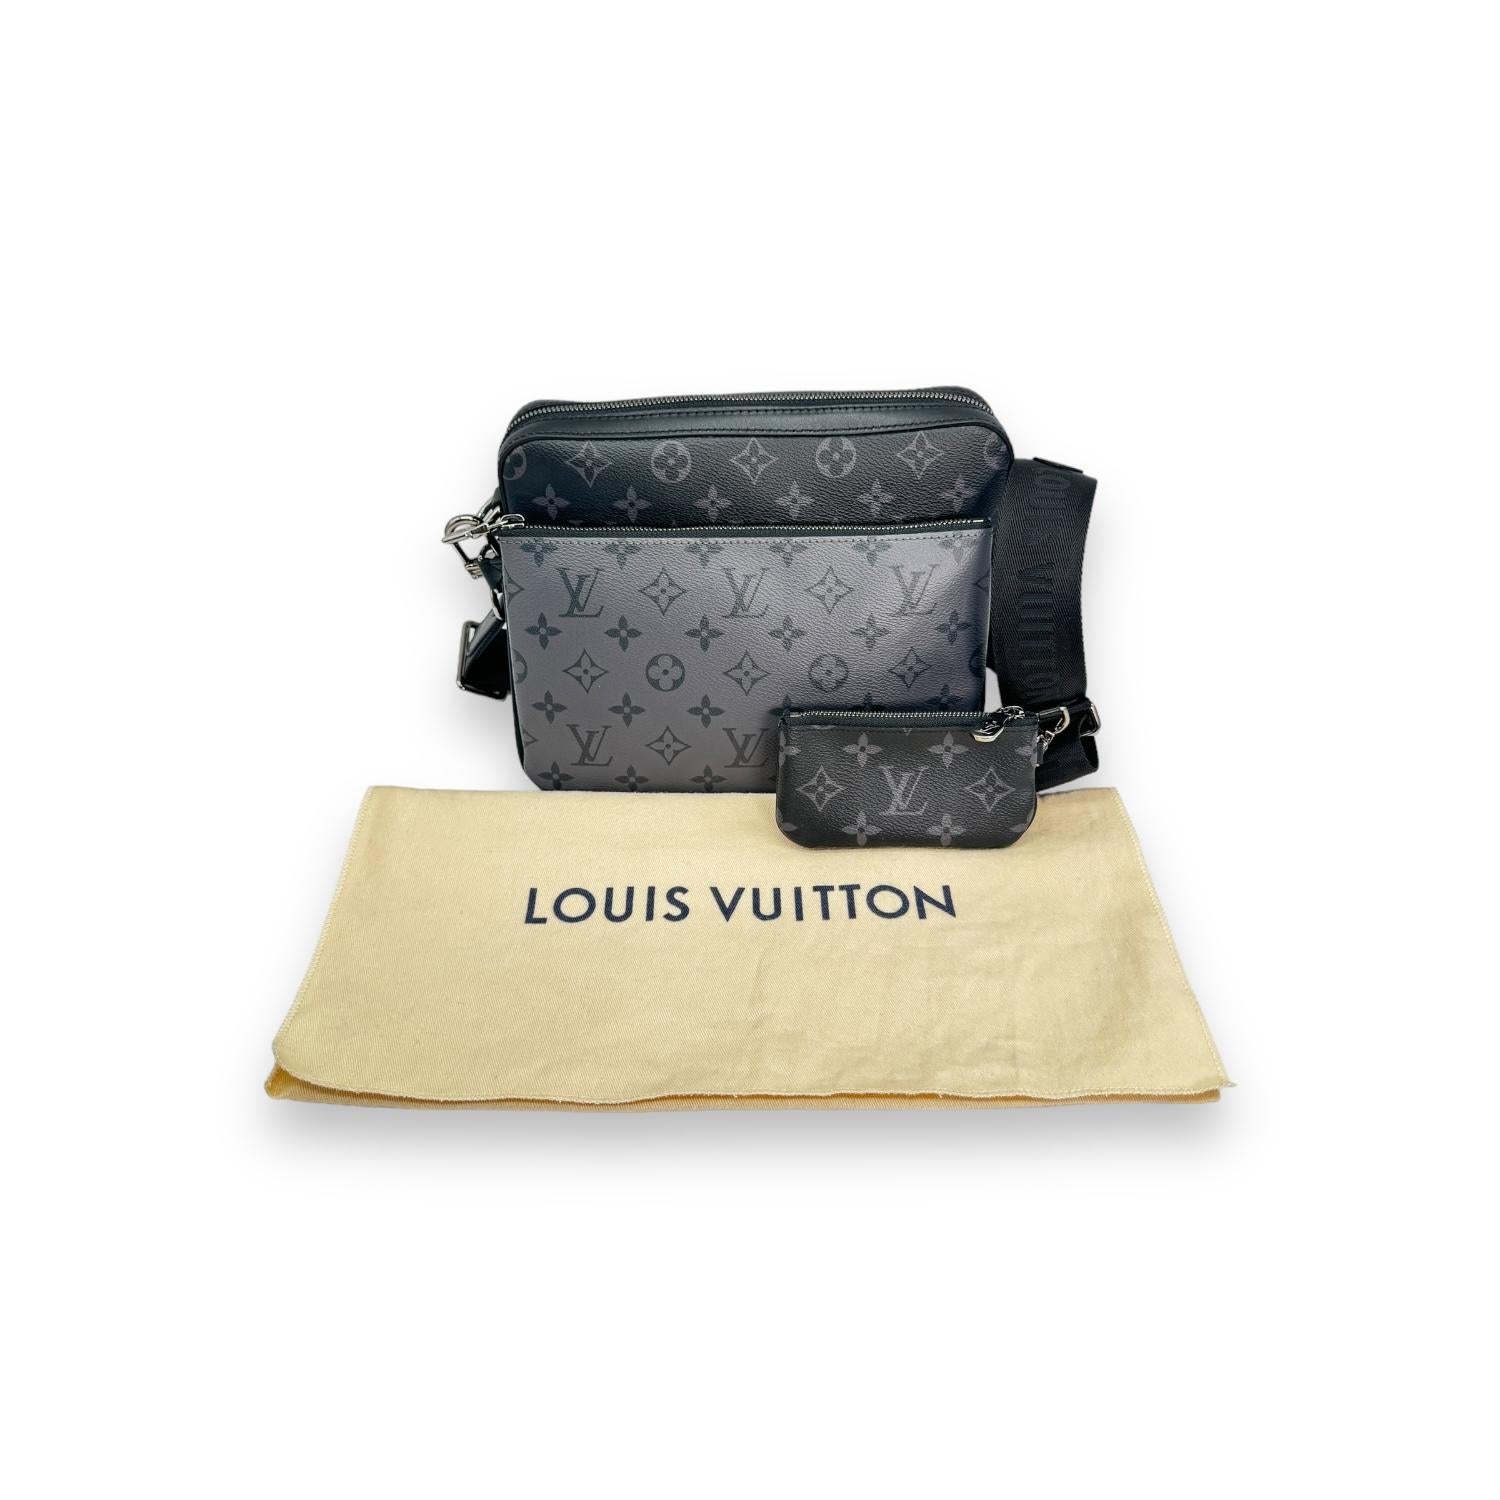 Die Louis Vuitton Reverse Monogram Eclipse Trio Messenger Bag ist ein in Frankreich hergestelltes Designerstück mit Monogram Eclipse und rückseitig beschichtetem Canvas. Die Tasche ist mit einem Mikrochip zur Echtheitsprüfung ausgestattet und